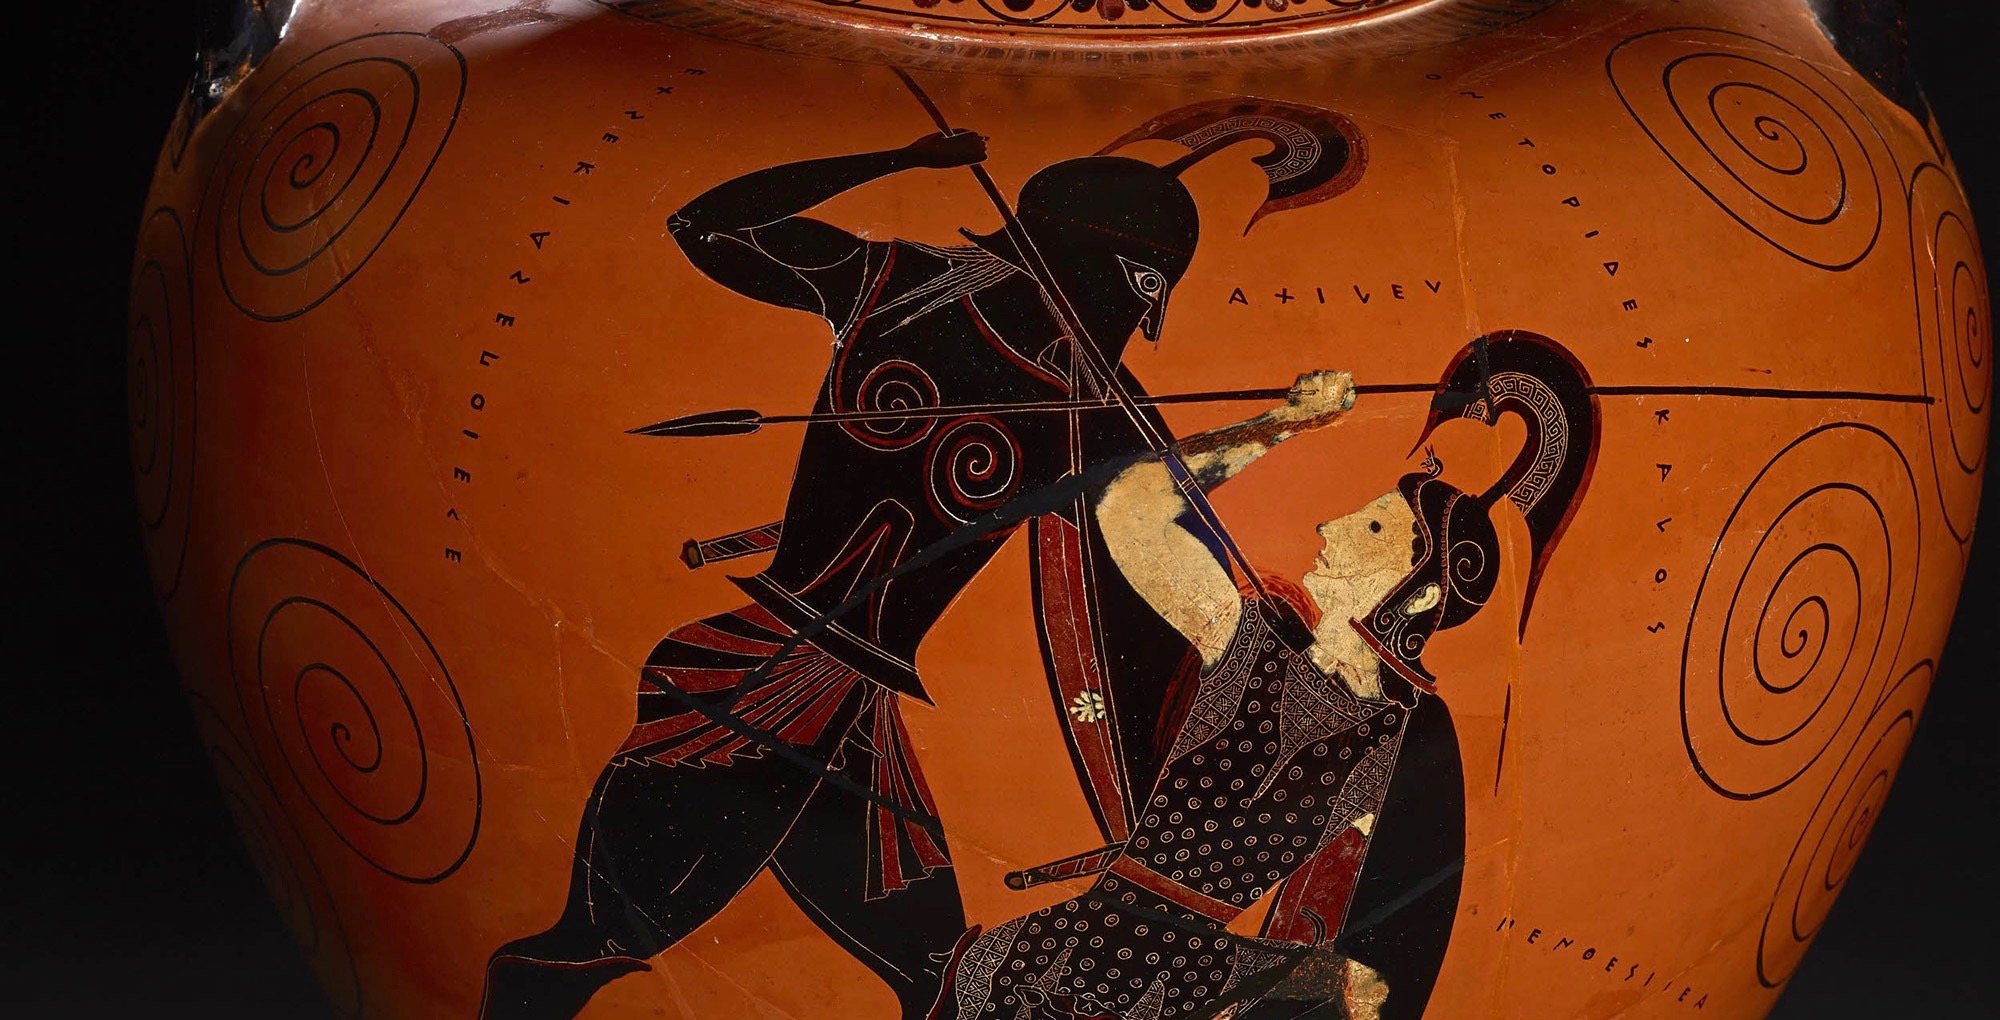 Απίστευτη προπαγάνδα ΕΒΡΑΪΚΗ εις βάρος της Ελλάδος – Ήταν μαύροι οι αρχαίοι Έλληνες;